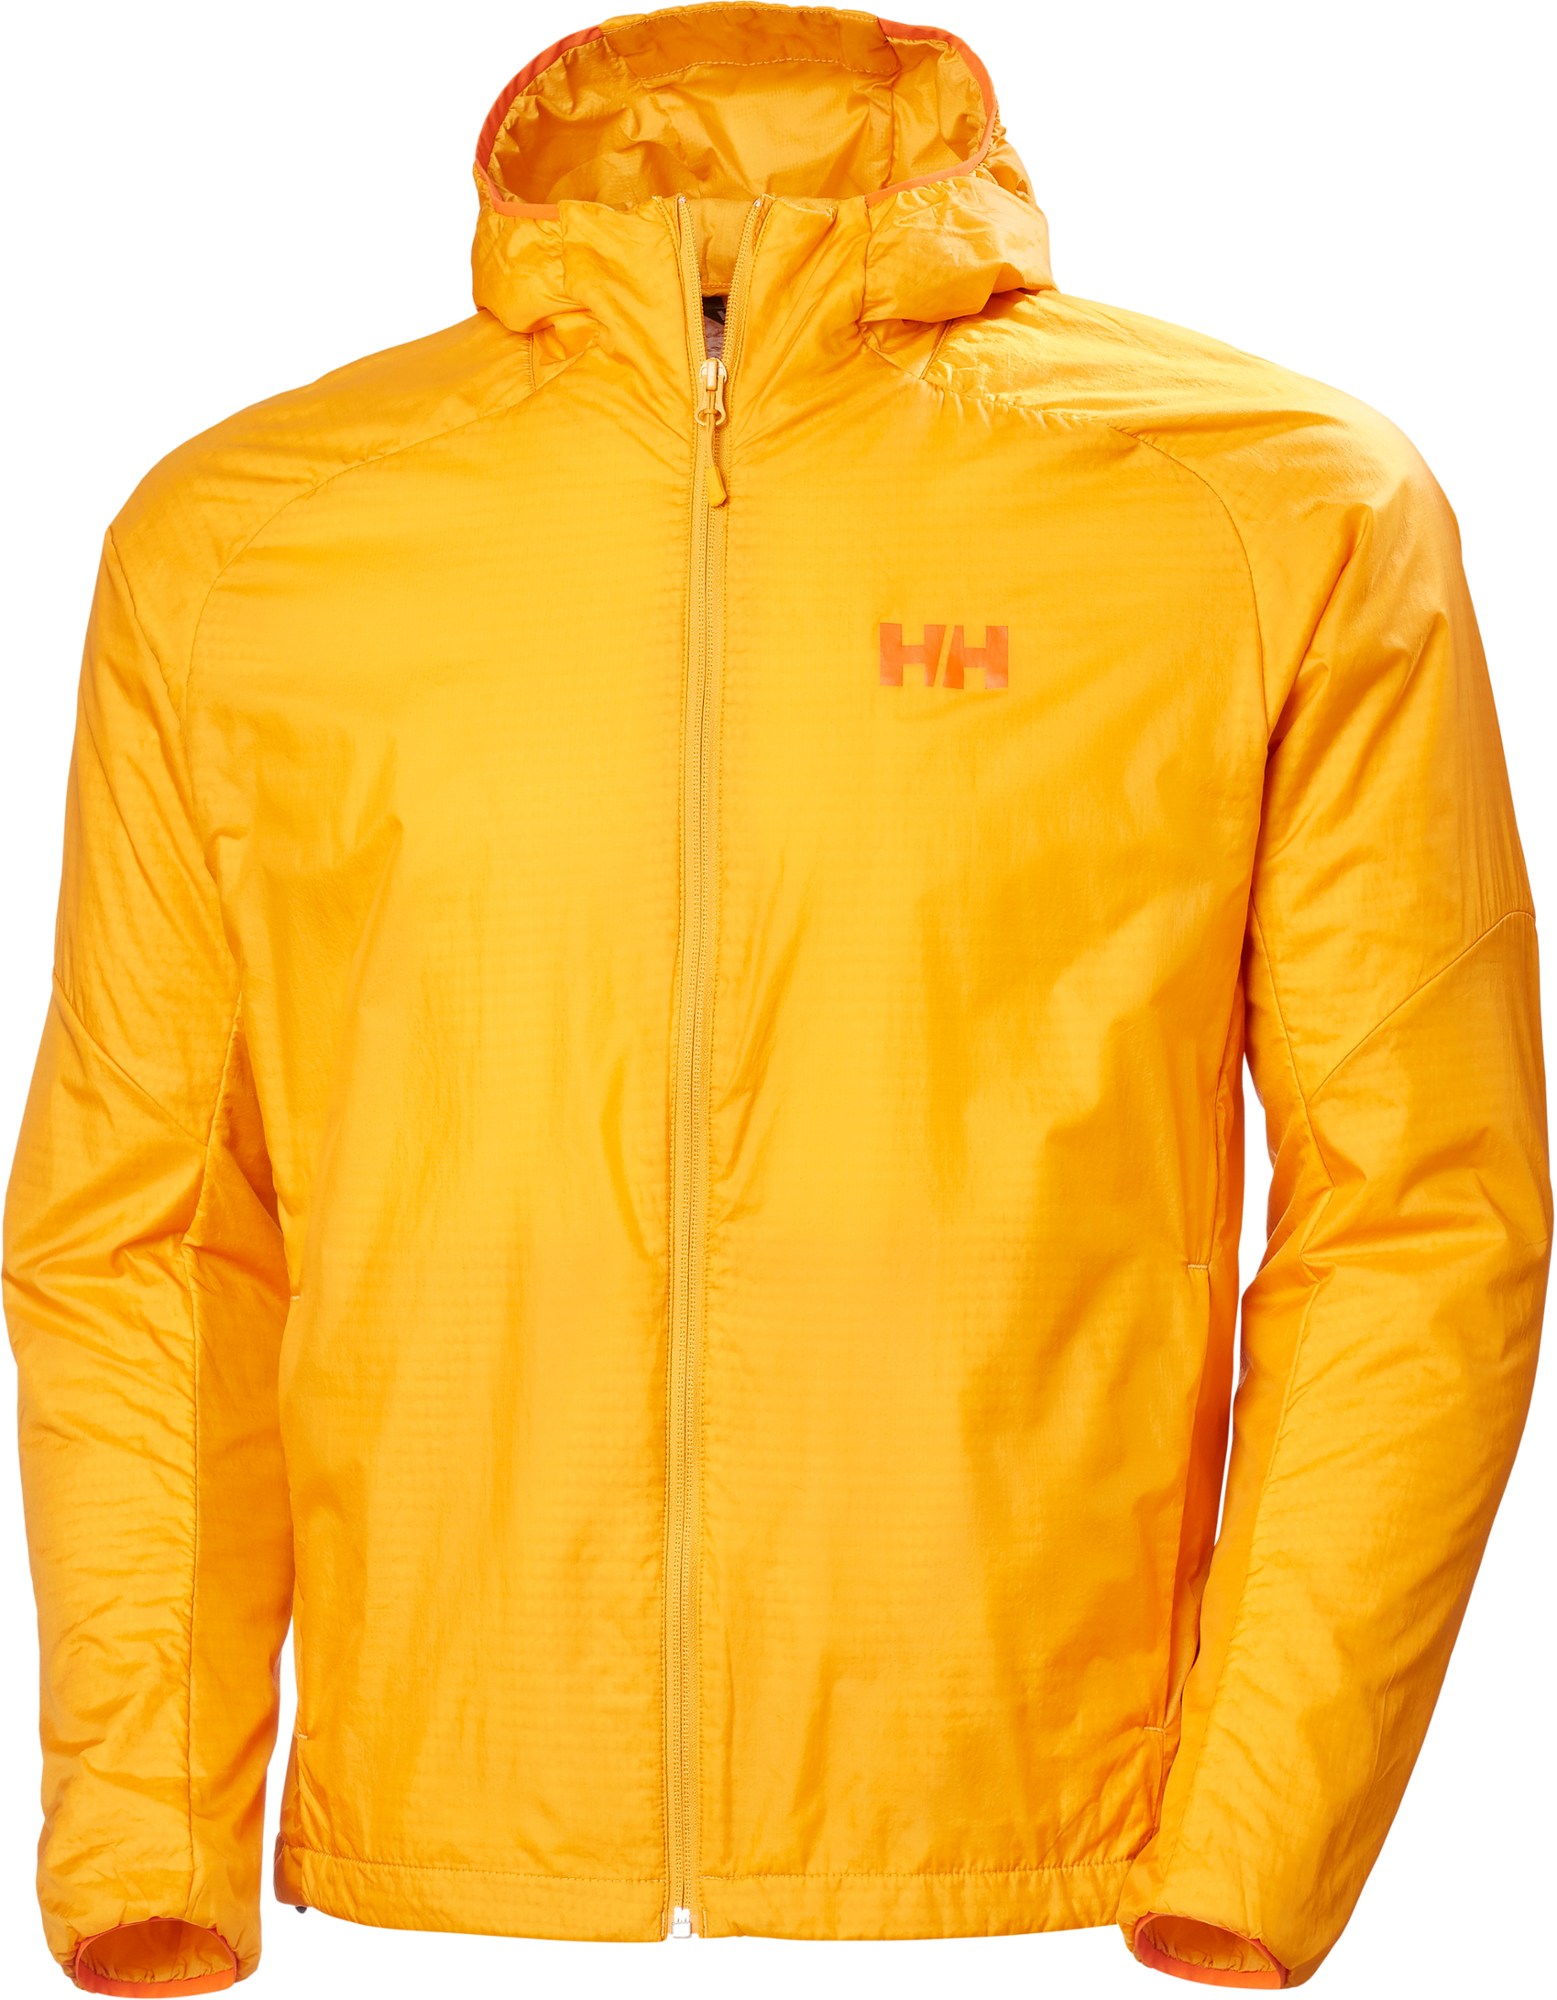 Куртка Rapide LIFALOFT с воздушным утеплителем — мужская Helly Hansen, оранжевый